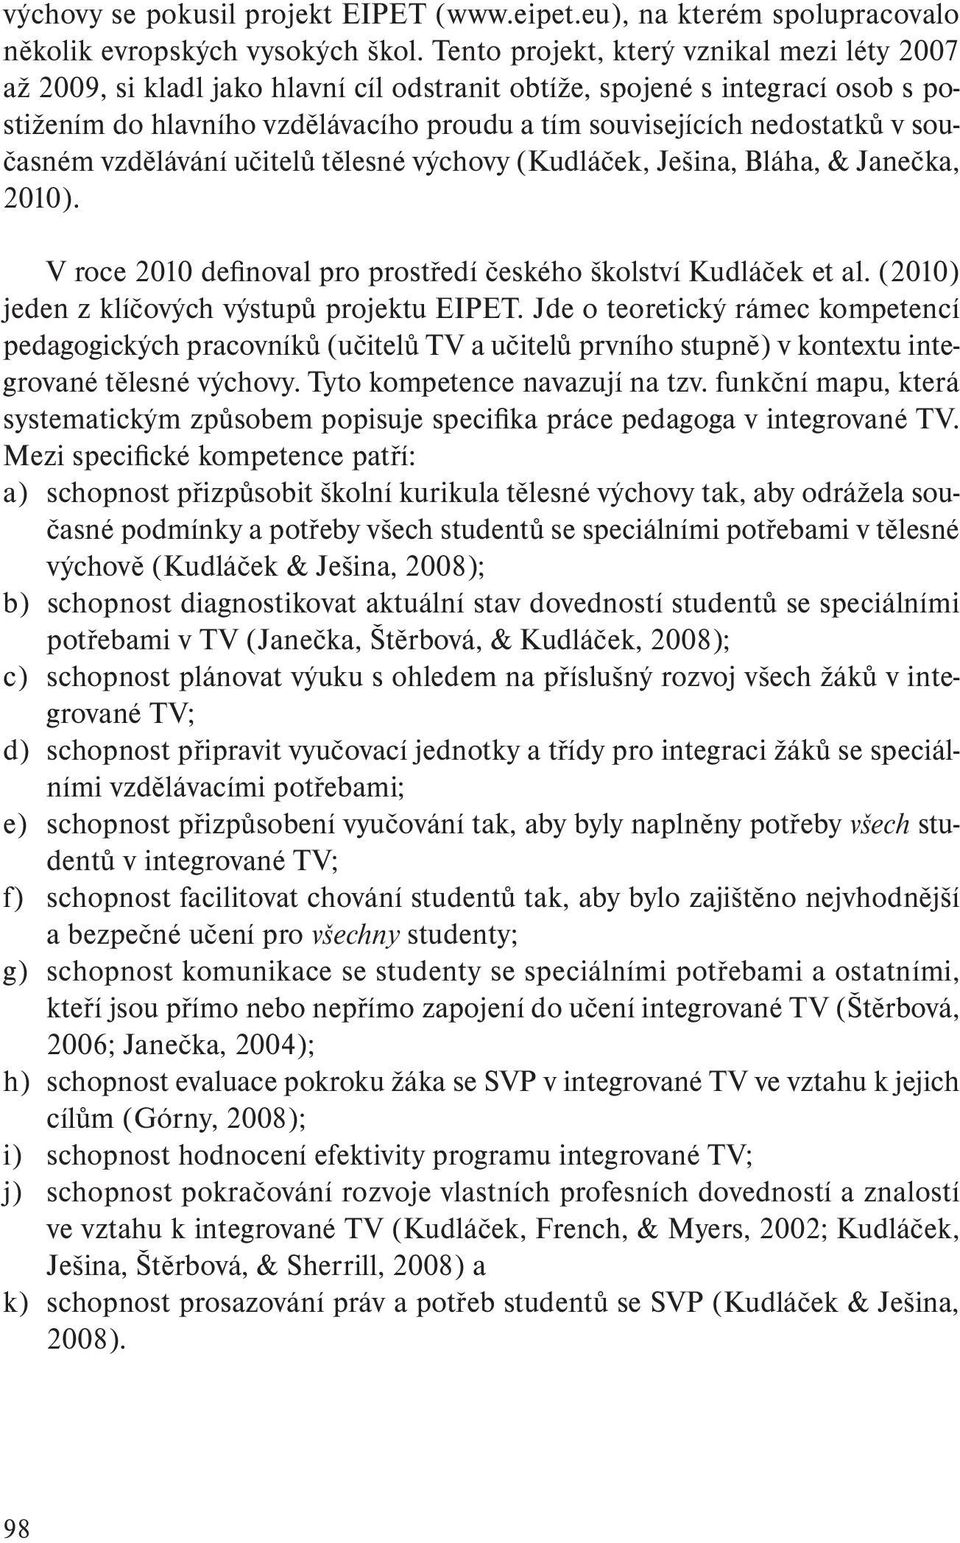 současném vzdělávání učitelů tělesné výchovy (Kudláček, Ješina, Bláha, & Janečka, 2010). V roce 2010 definoval pro prostředí českého školství Kudláček et al.